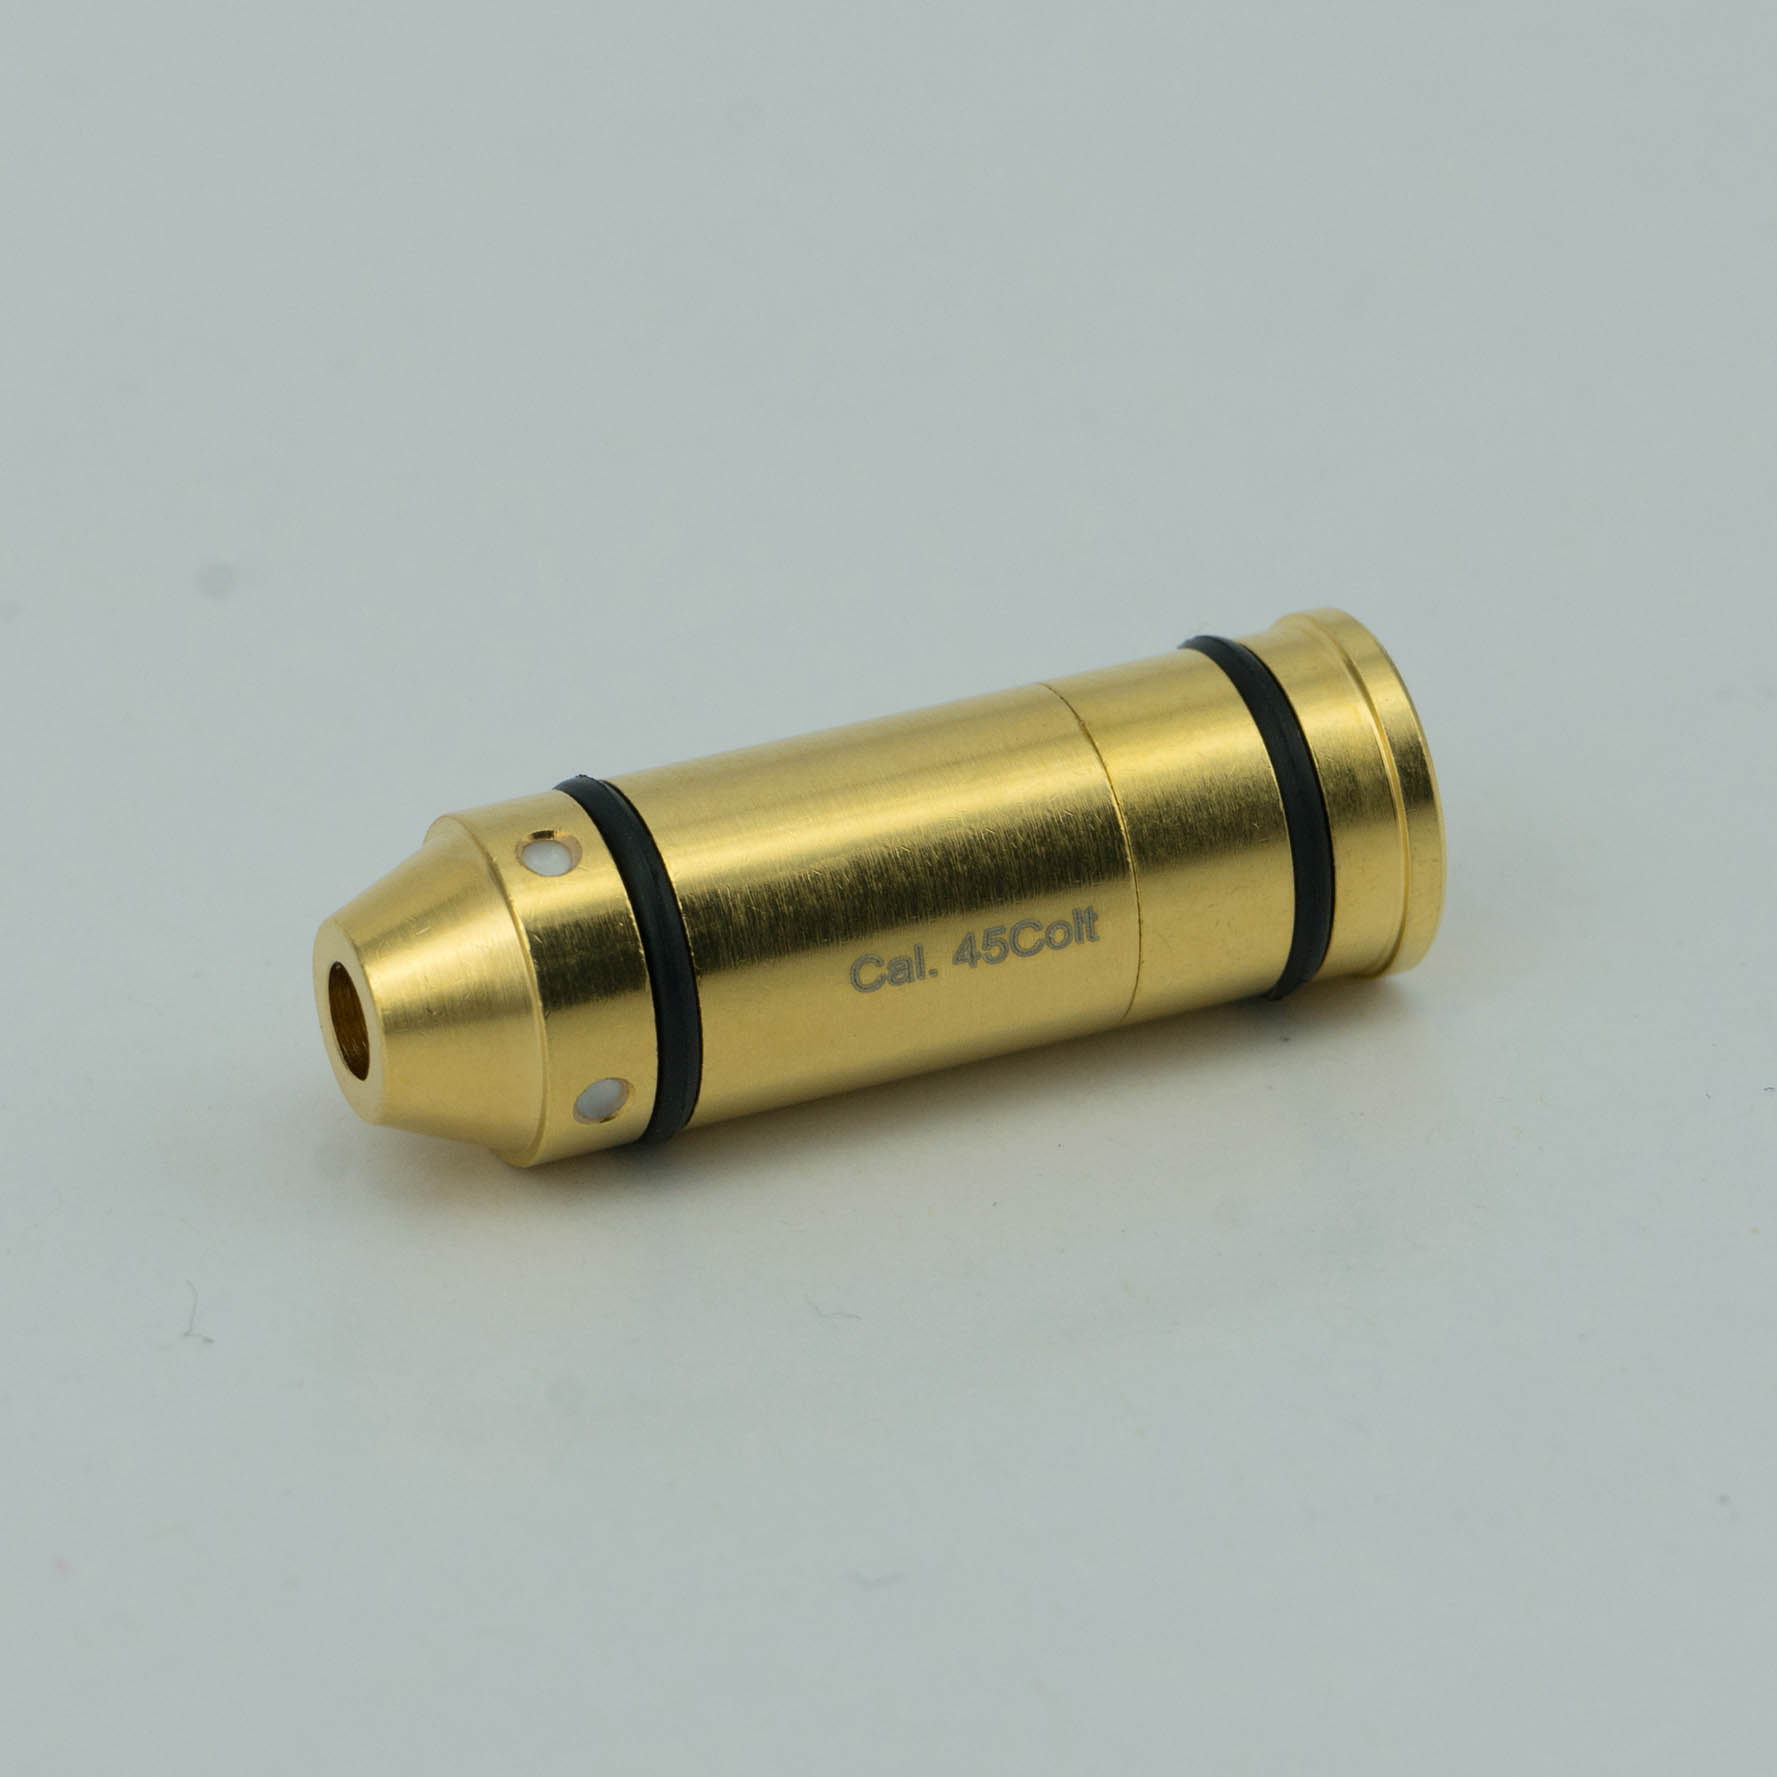 Bullet Laser Traget Tainer 45 Colt Laser Bullet for Laser Hit Training